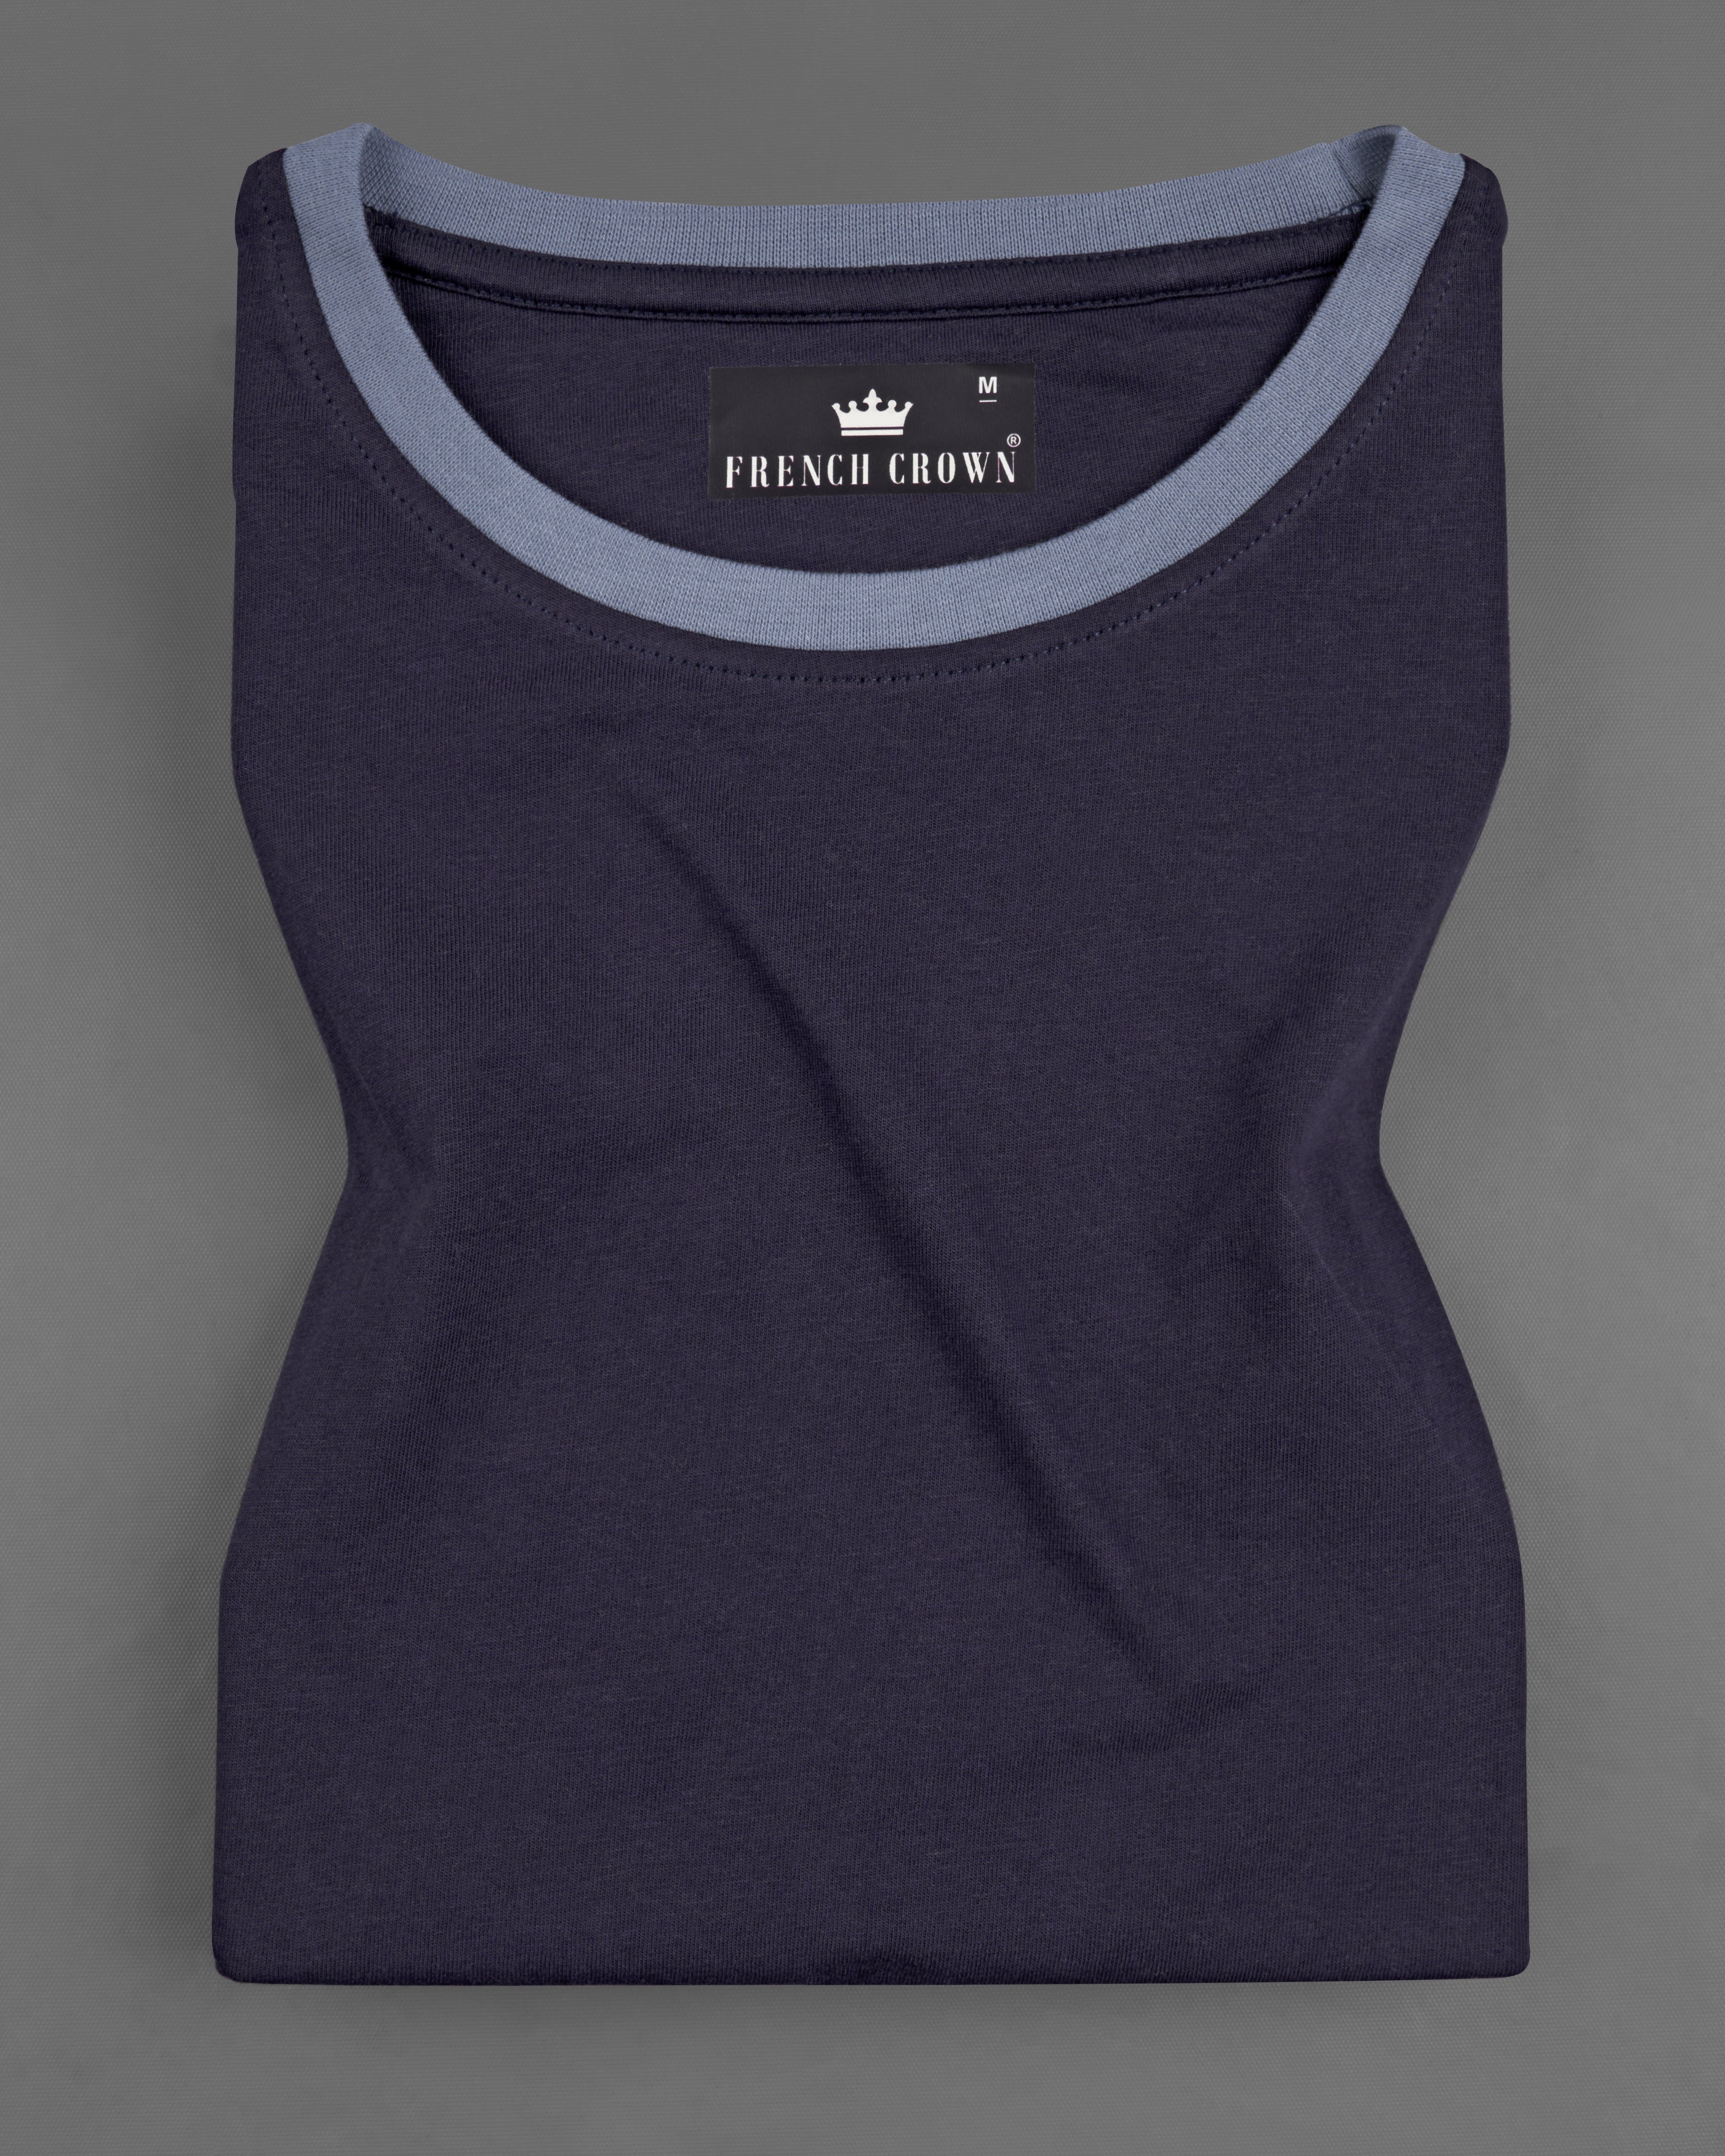 Navy Blue Premium Cotton Organic T-shirt TS643-S, TS643-M, TS643-L, TS643-XL, TS643-XXL